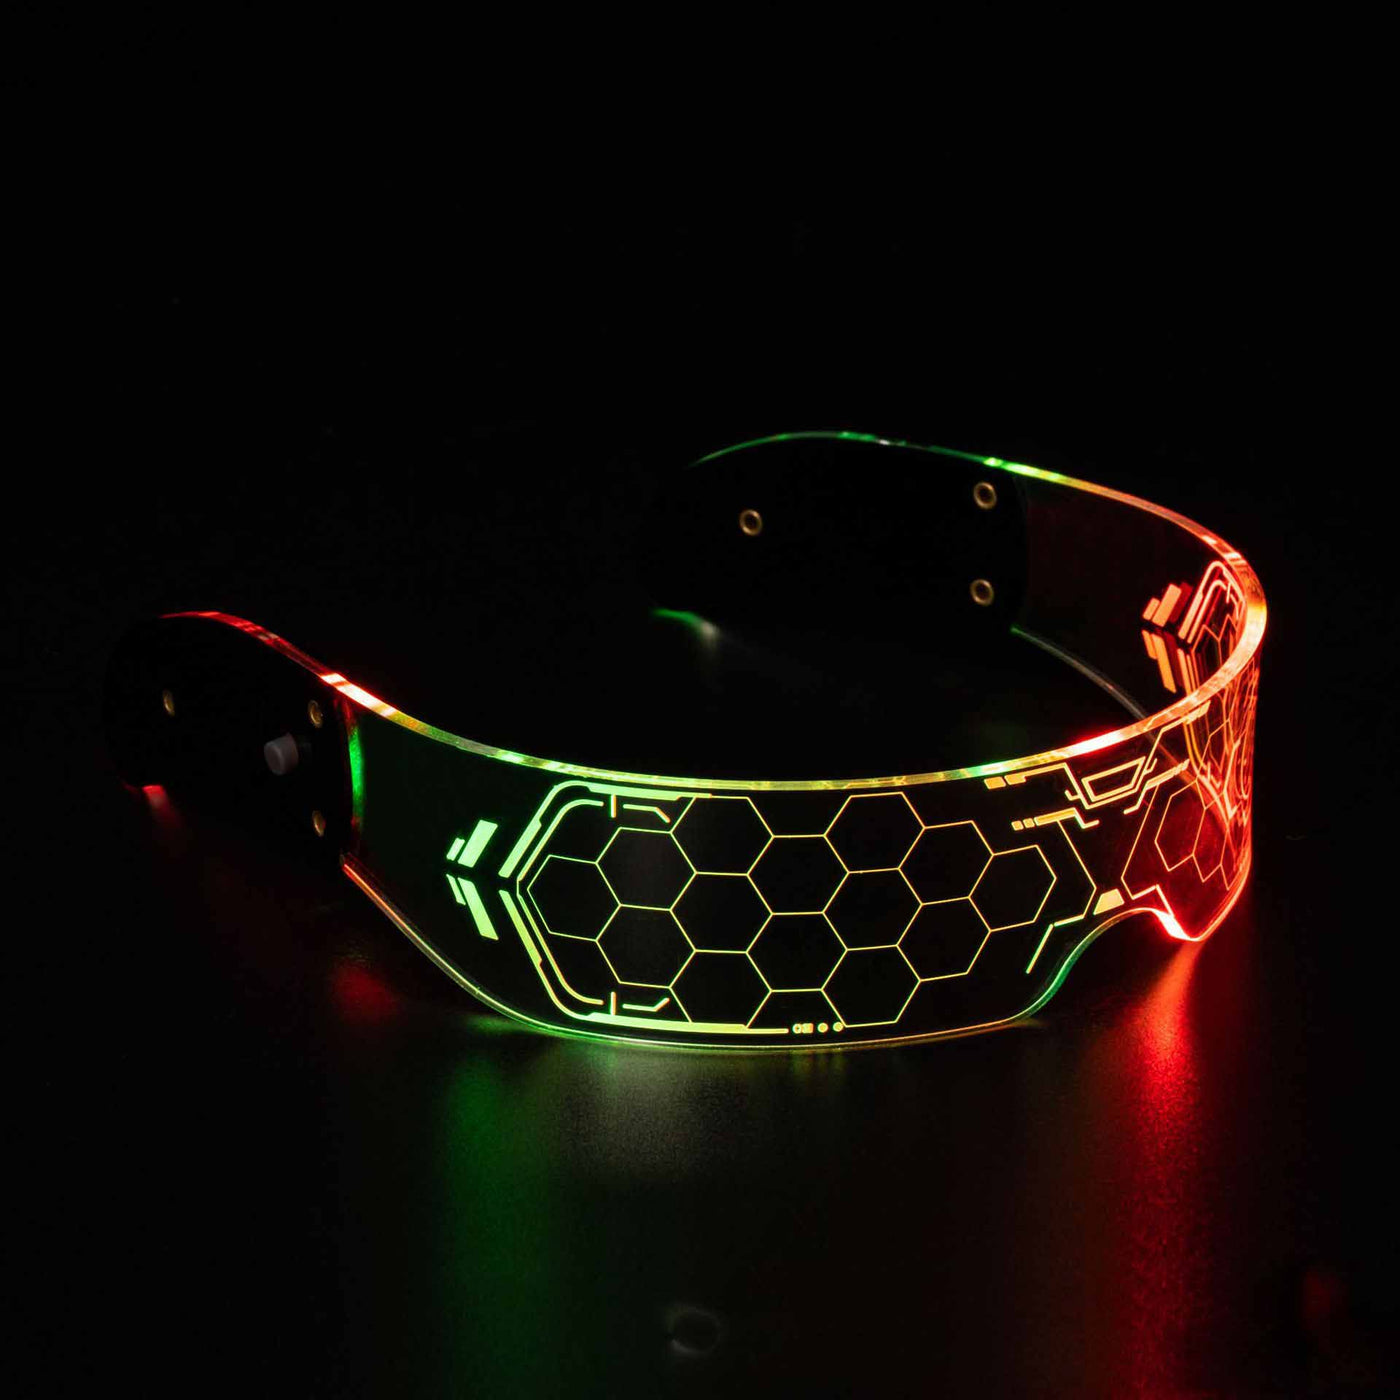 LED-Brille mit bunter Leuchttechnologie